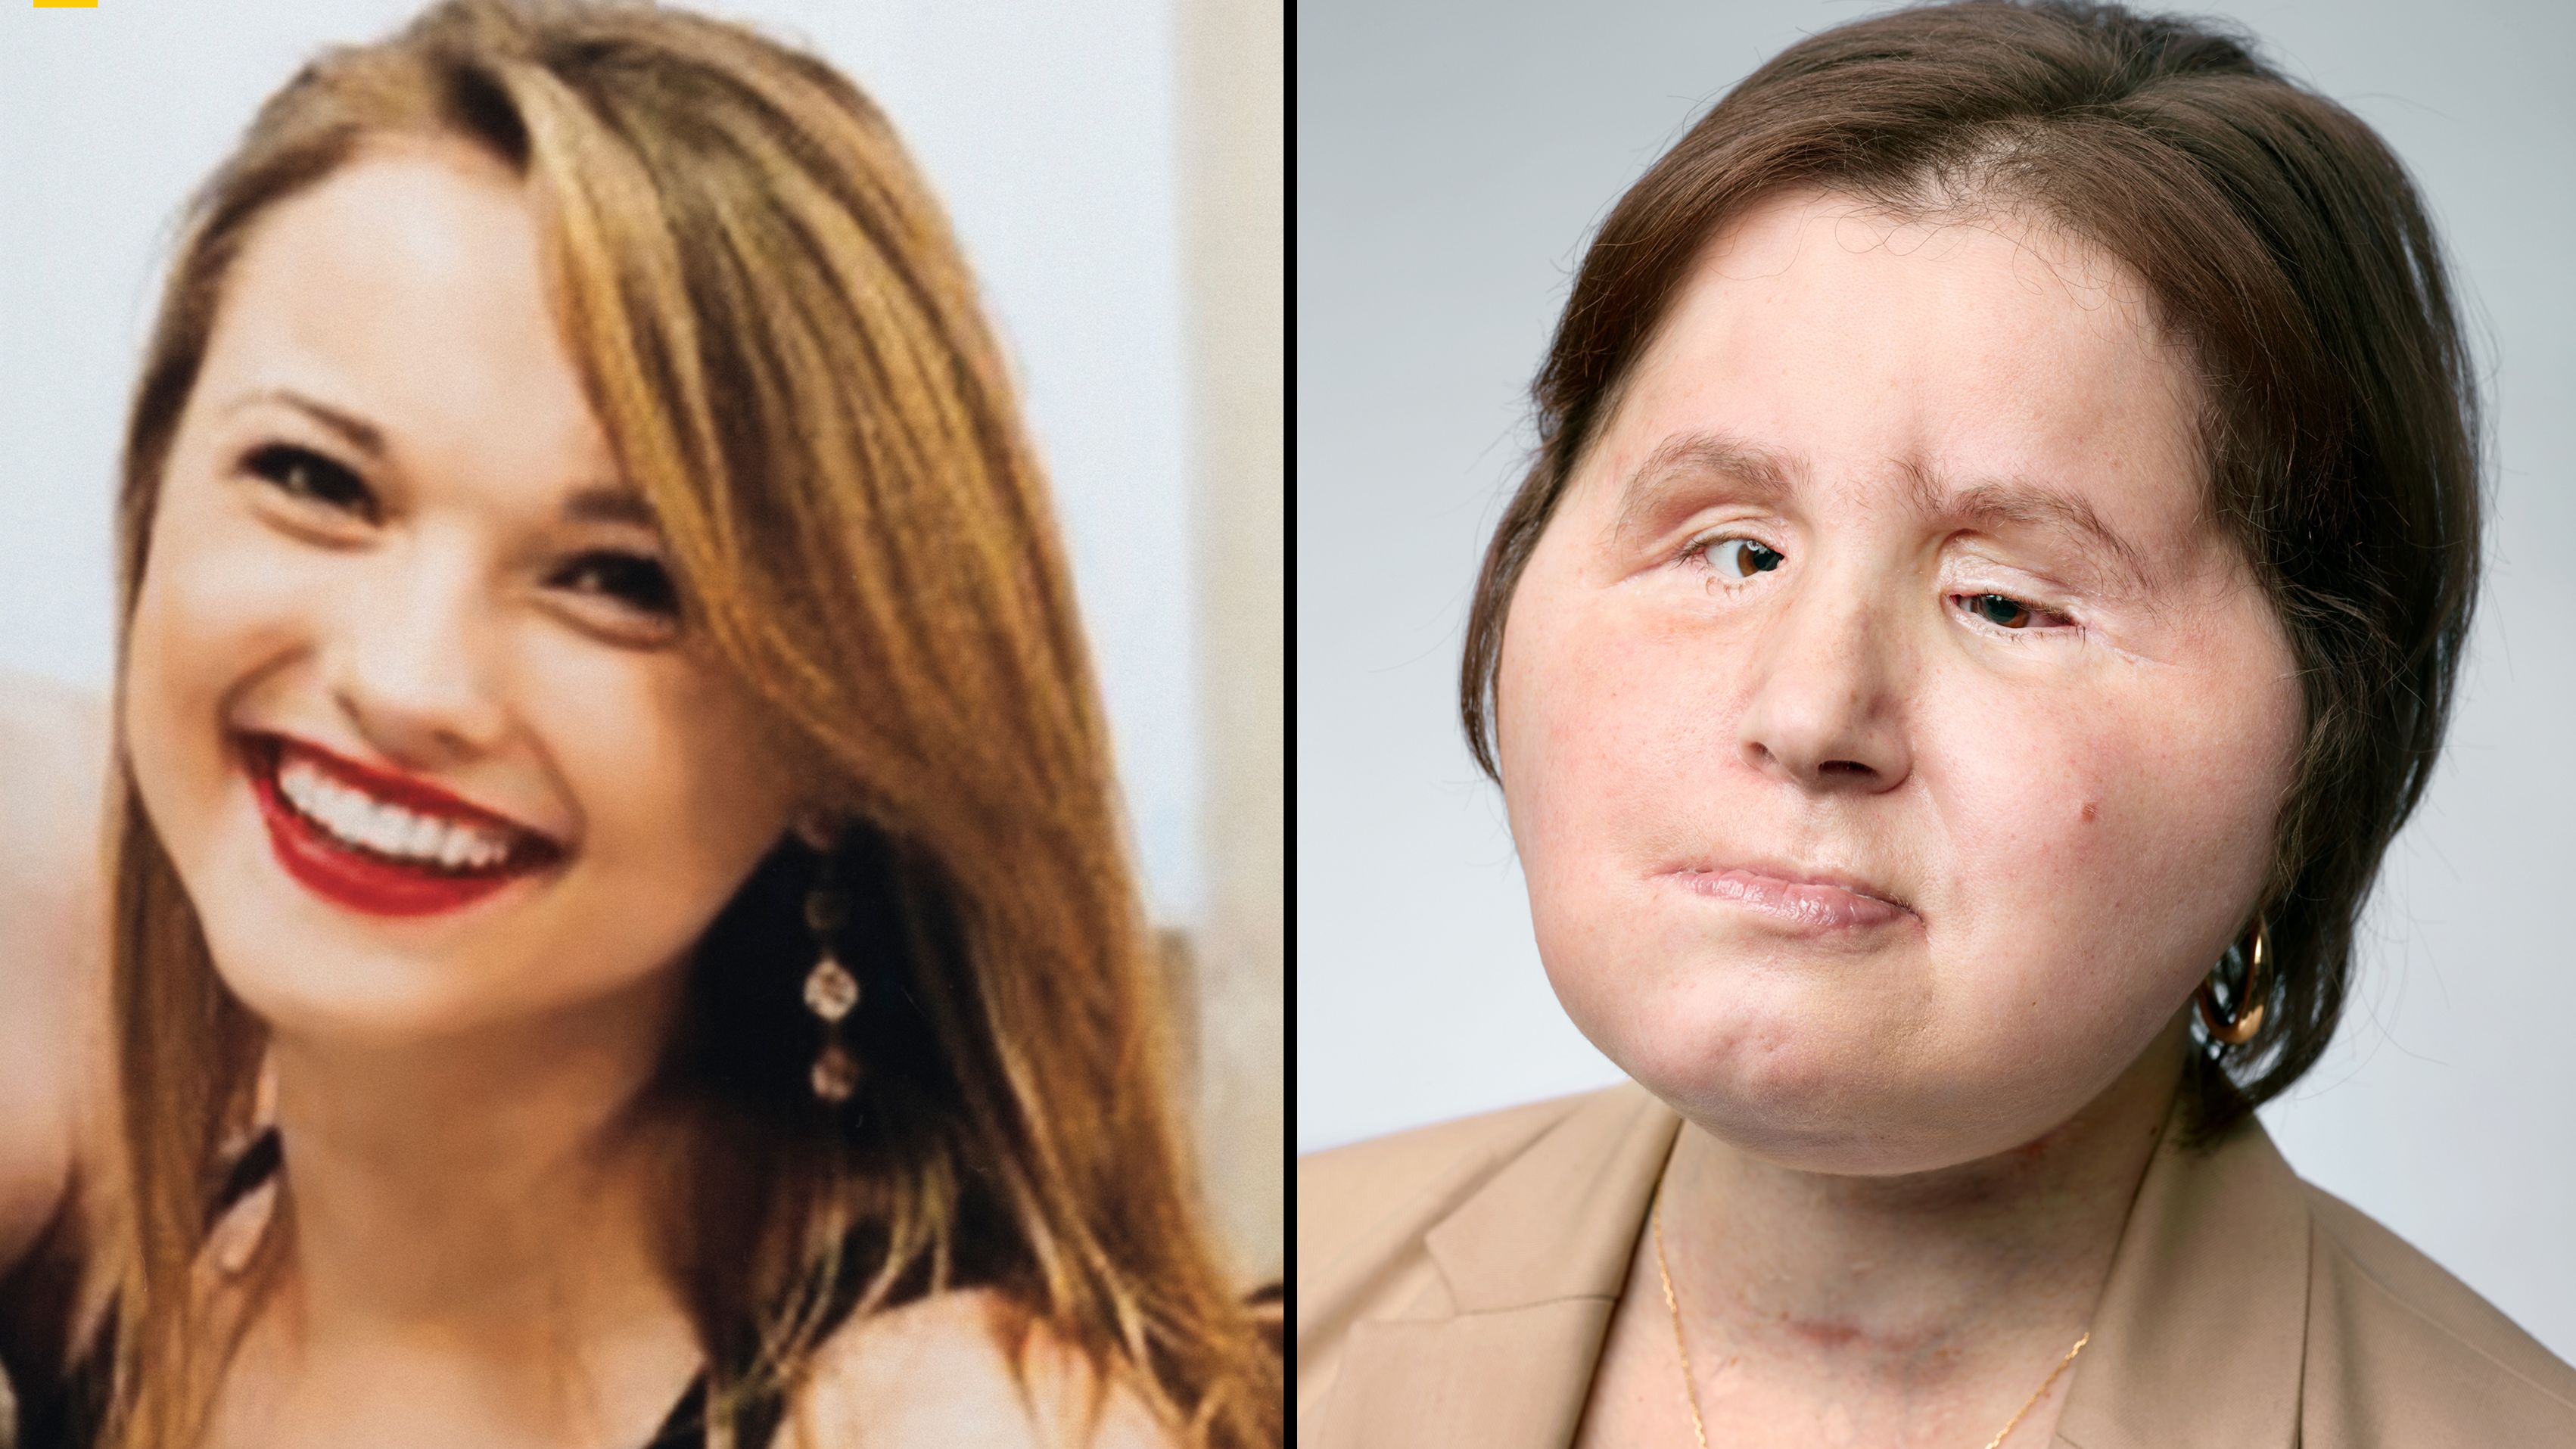 3404px x 1915px - Katie Stubblefield: Face transplant gives suicide survivor a 'second  chance' | CNN